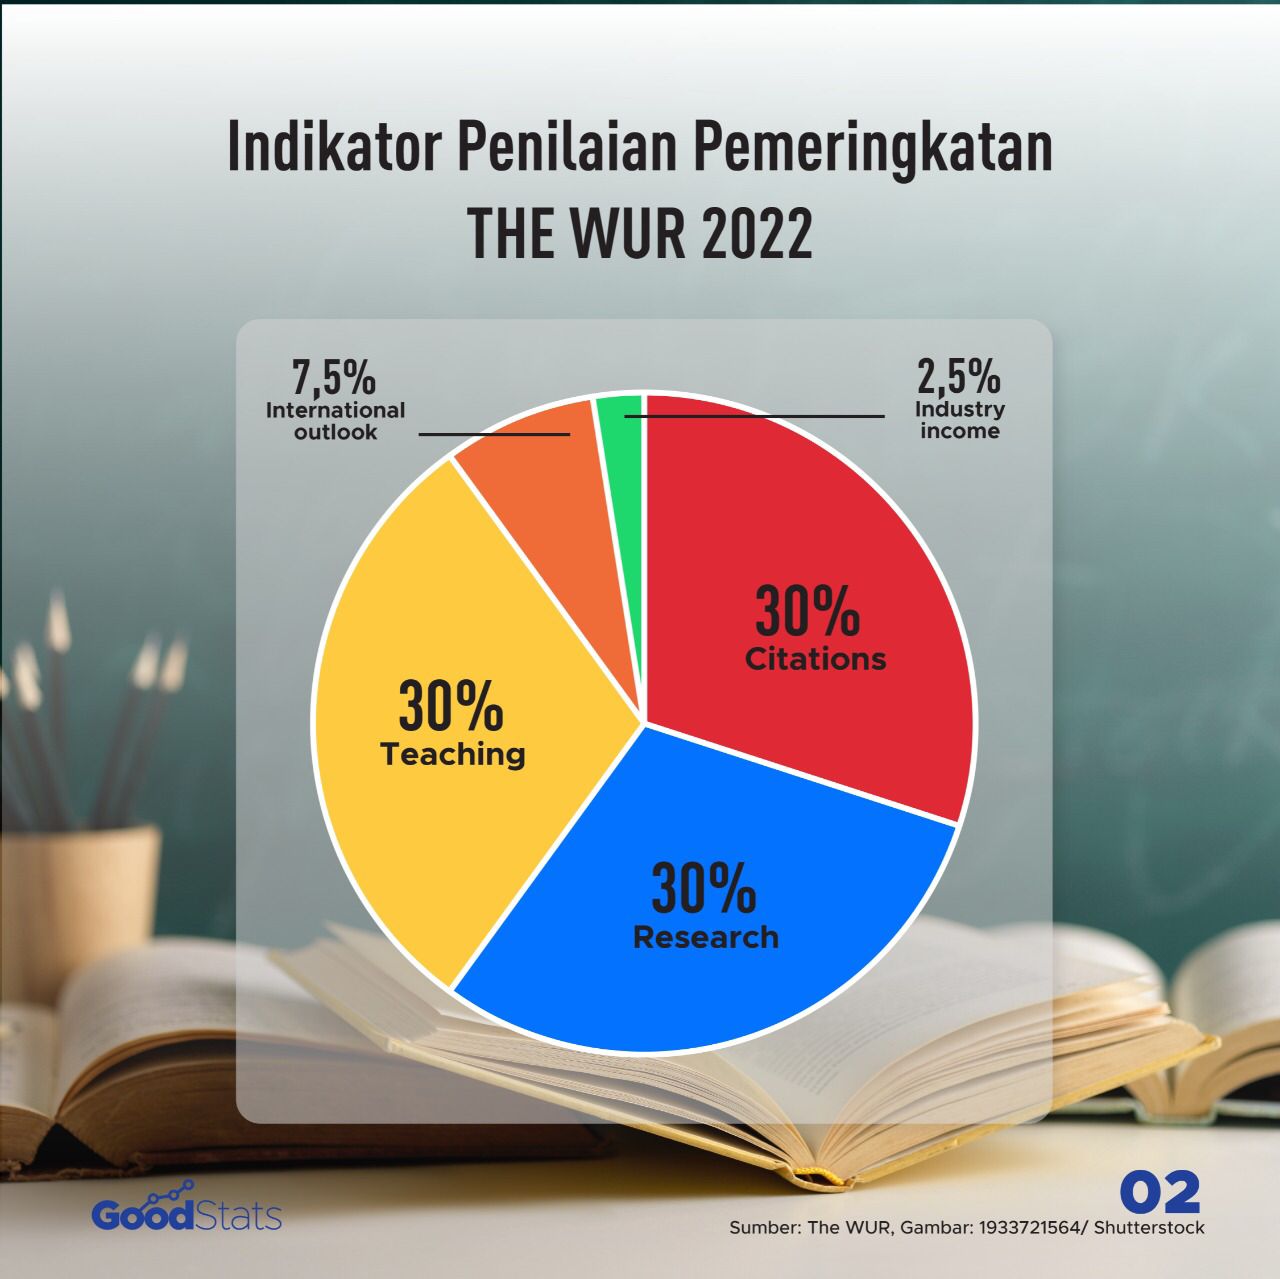 Indikator penilaian pemeringkatan perguruan tinggi The WUR 2022 © GoodStats